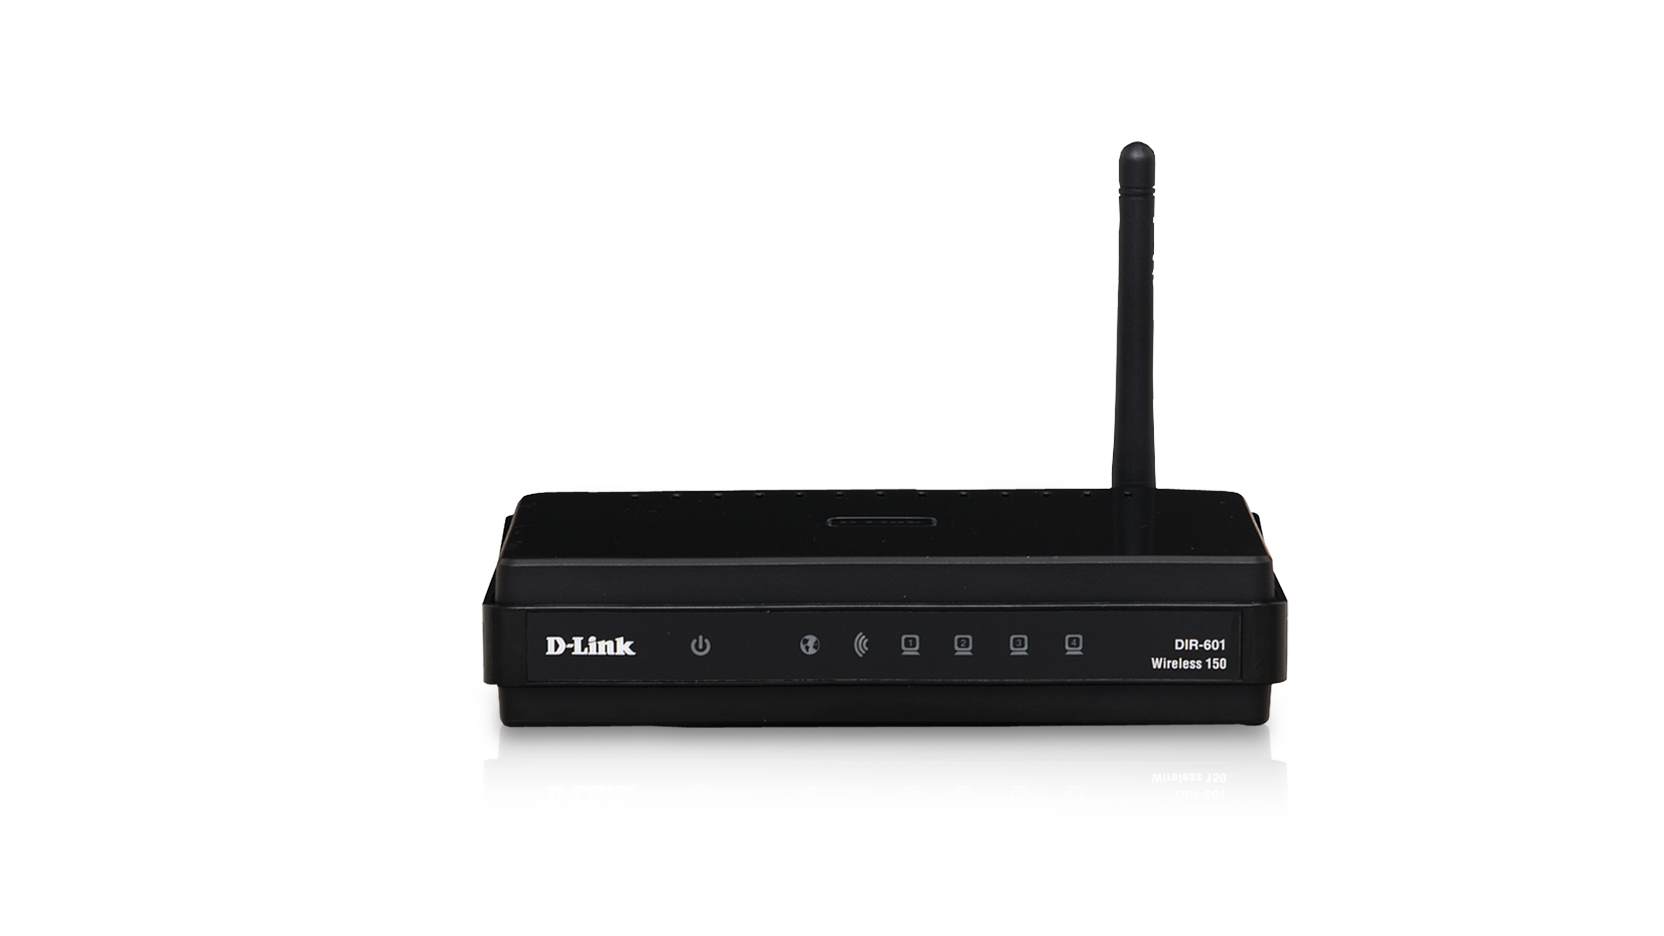 DIR-600 Wireless N 150 Home Router | D-Link UK